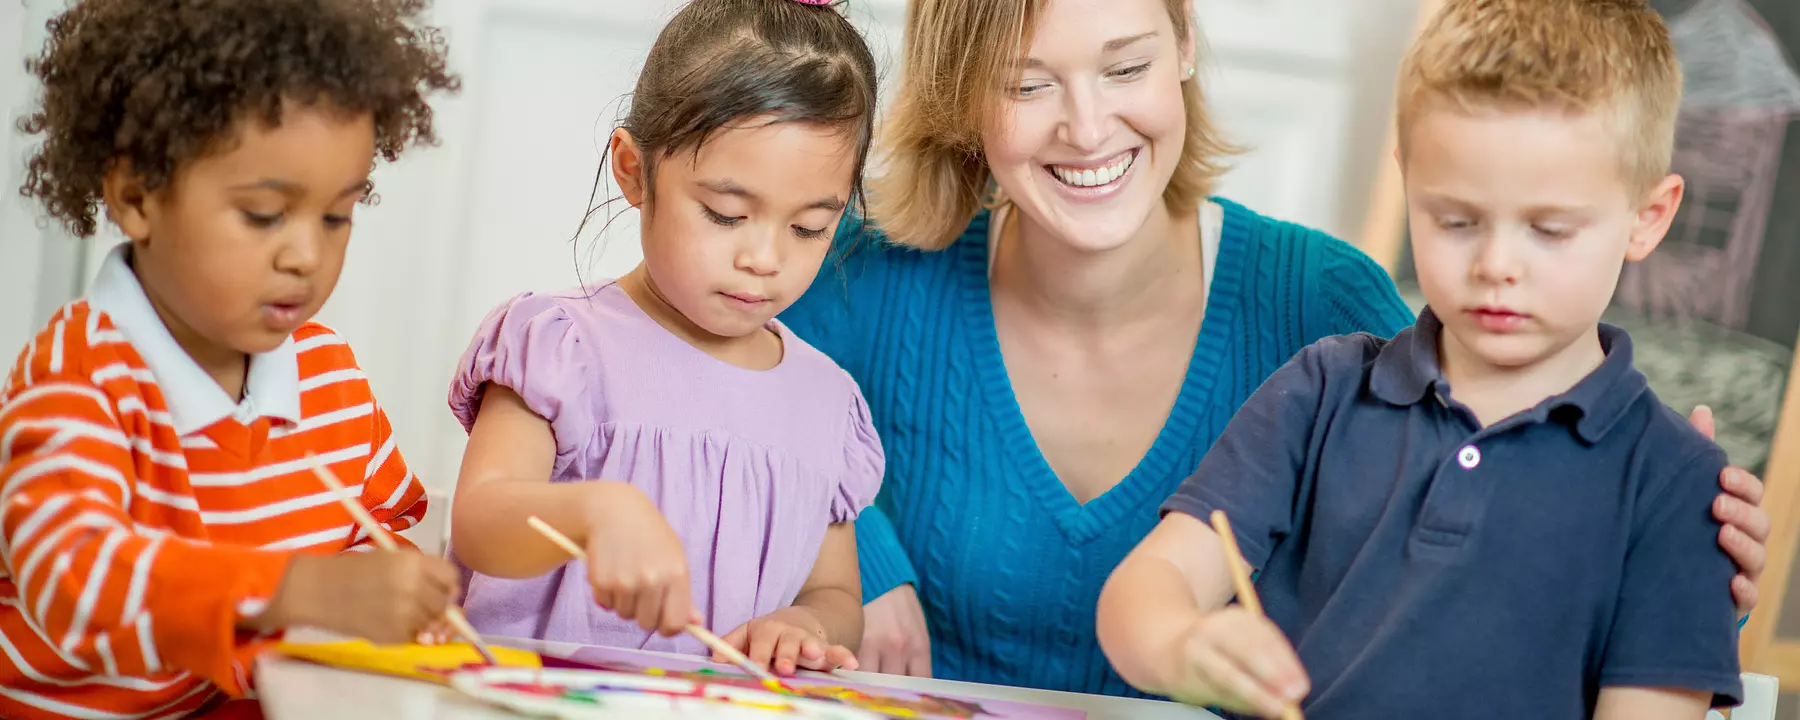 Preschool children paint with a teacher